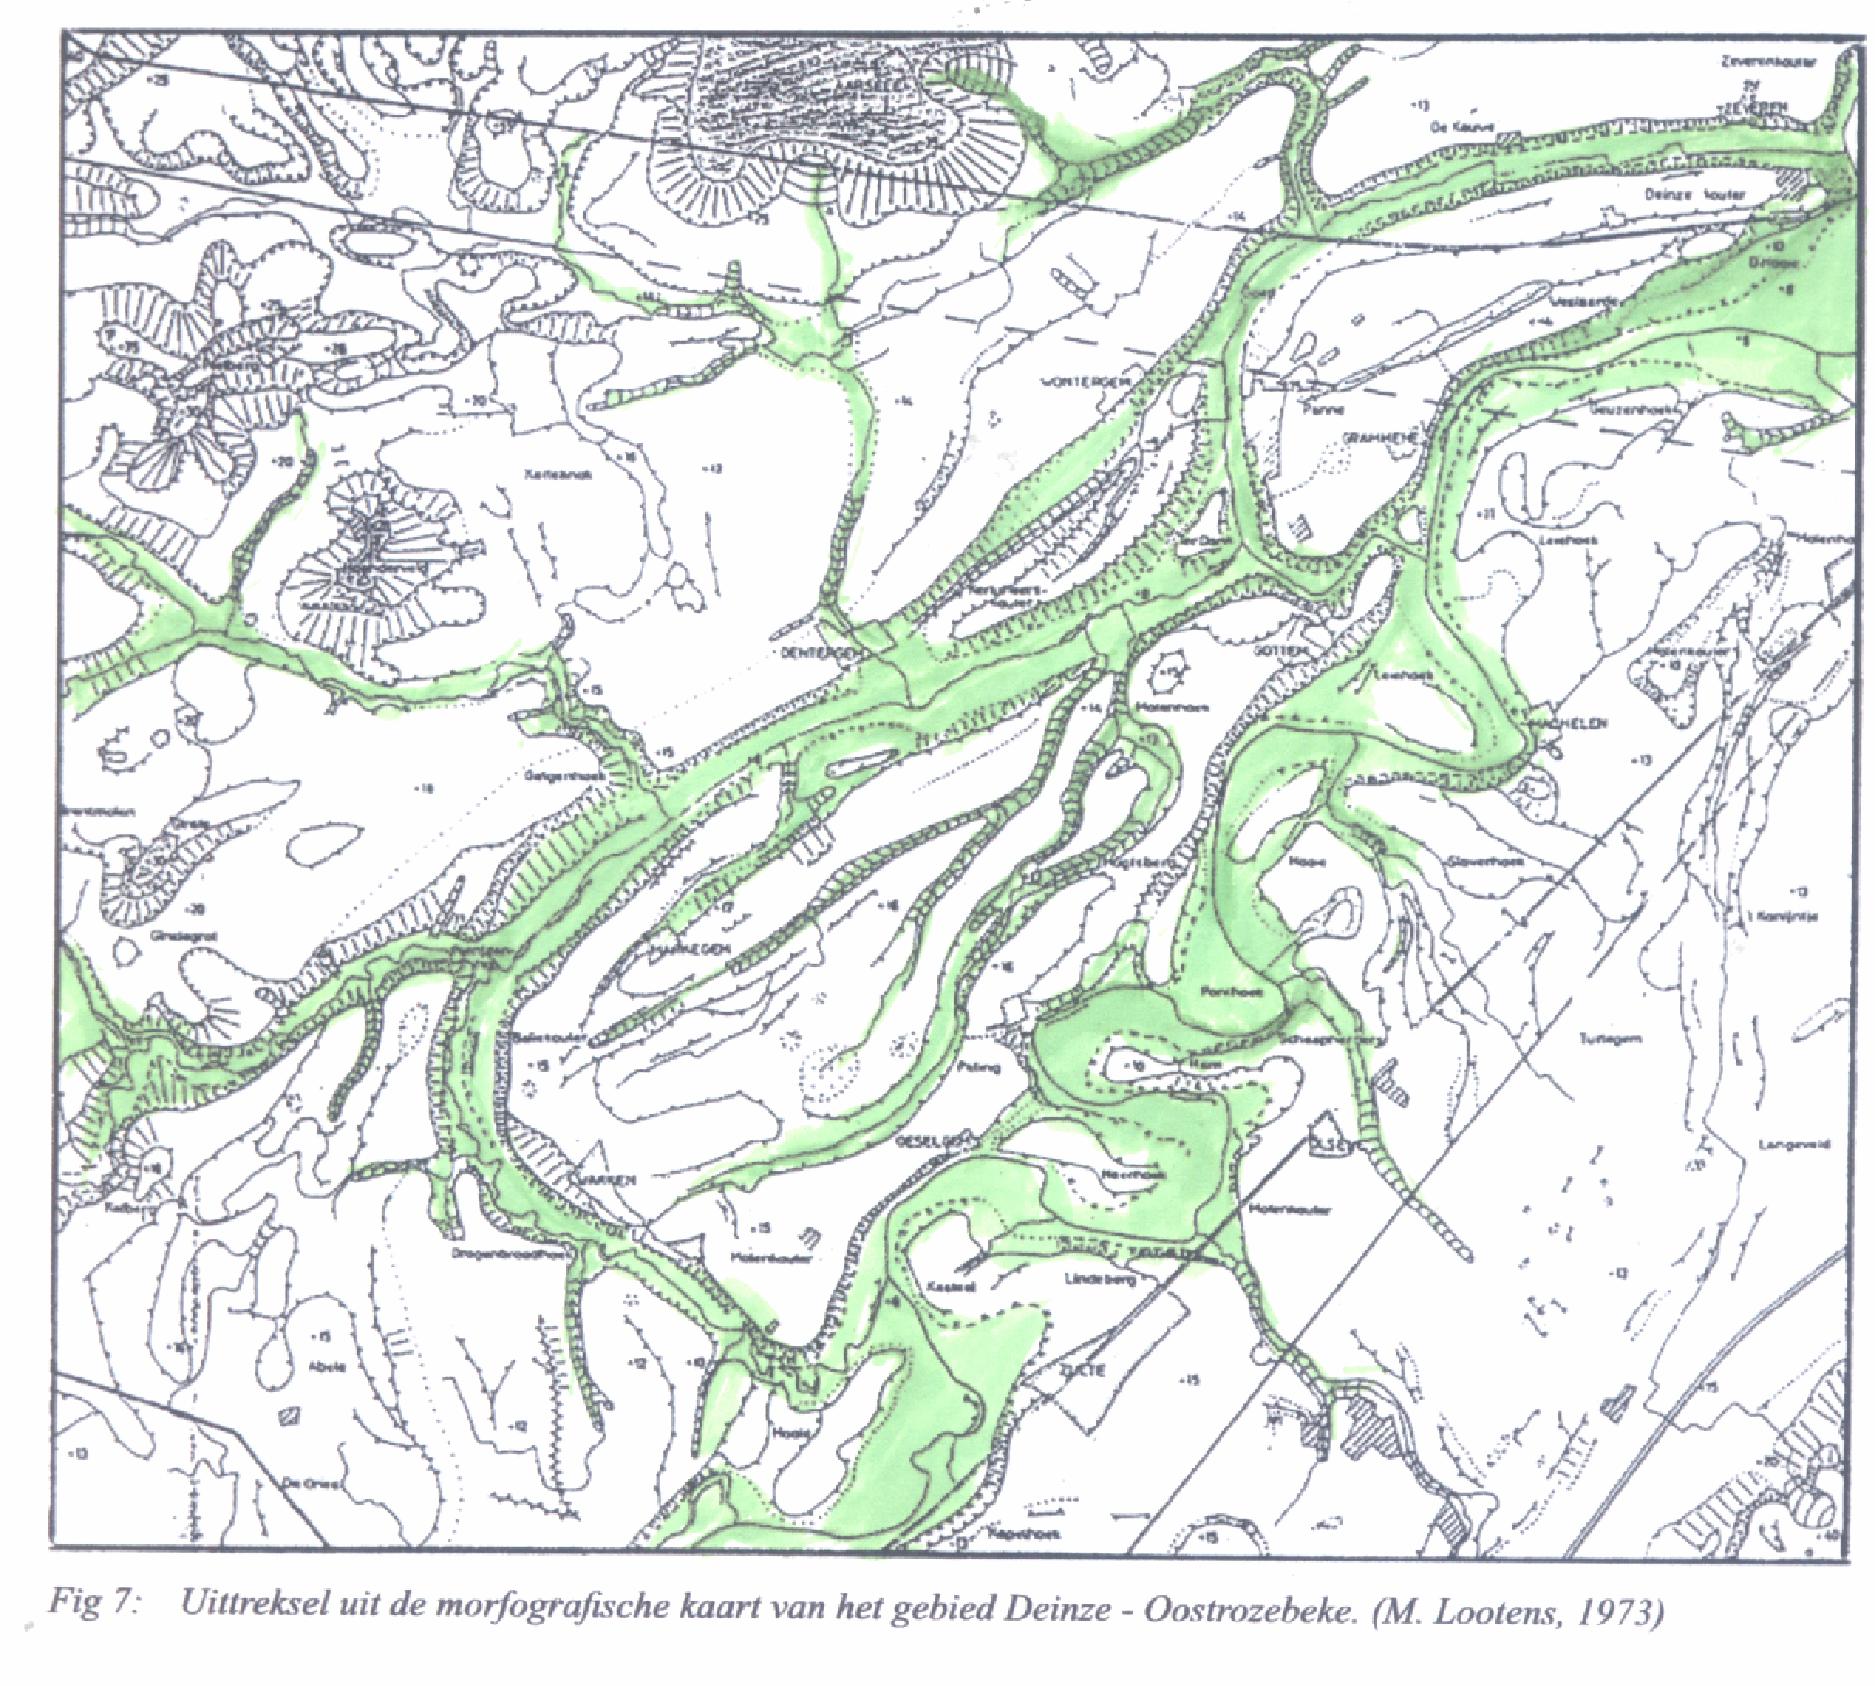 Op het morfografische kaartje van 1973 is de ligging van de meersen duidelijk te volgen met de beken die evenwijdig gericht afwateren naar de zee. Ze maken deel uit van de Vlaamse Vallei.